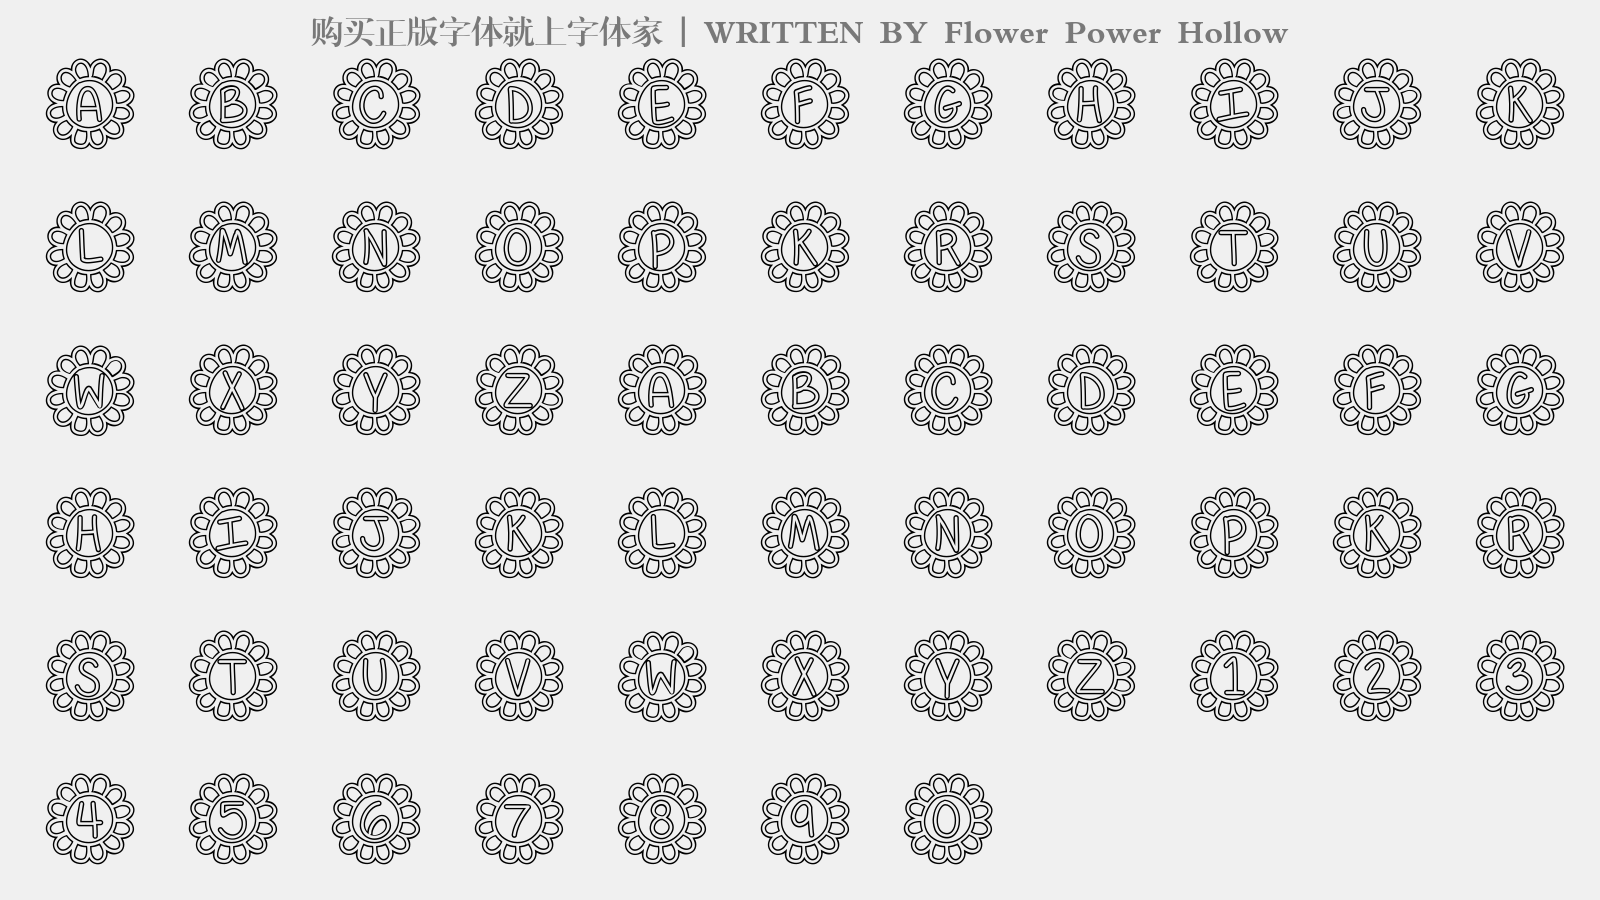 Flower Power Hollow - 大写字母/小写字母/数字